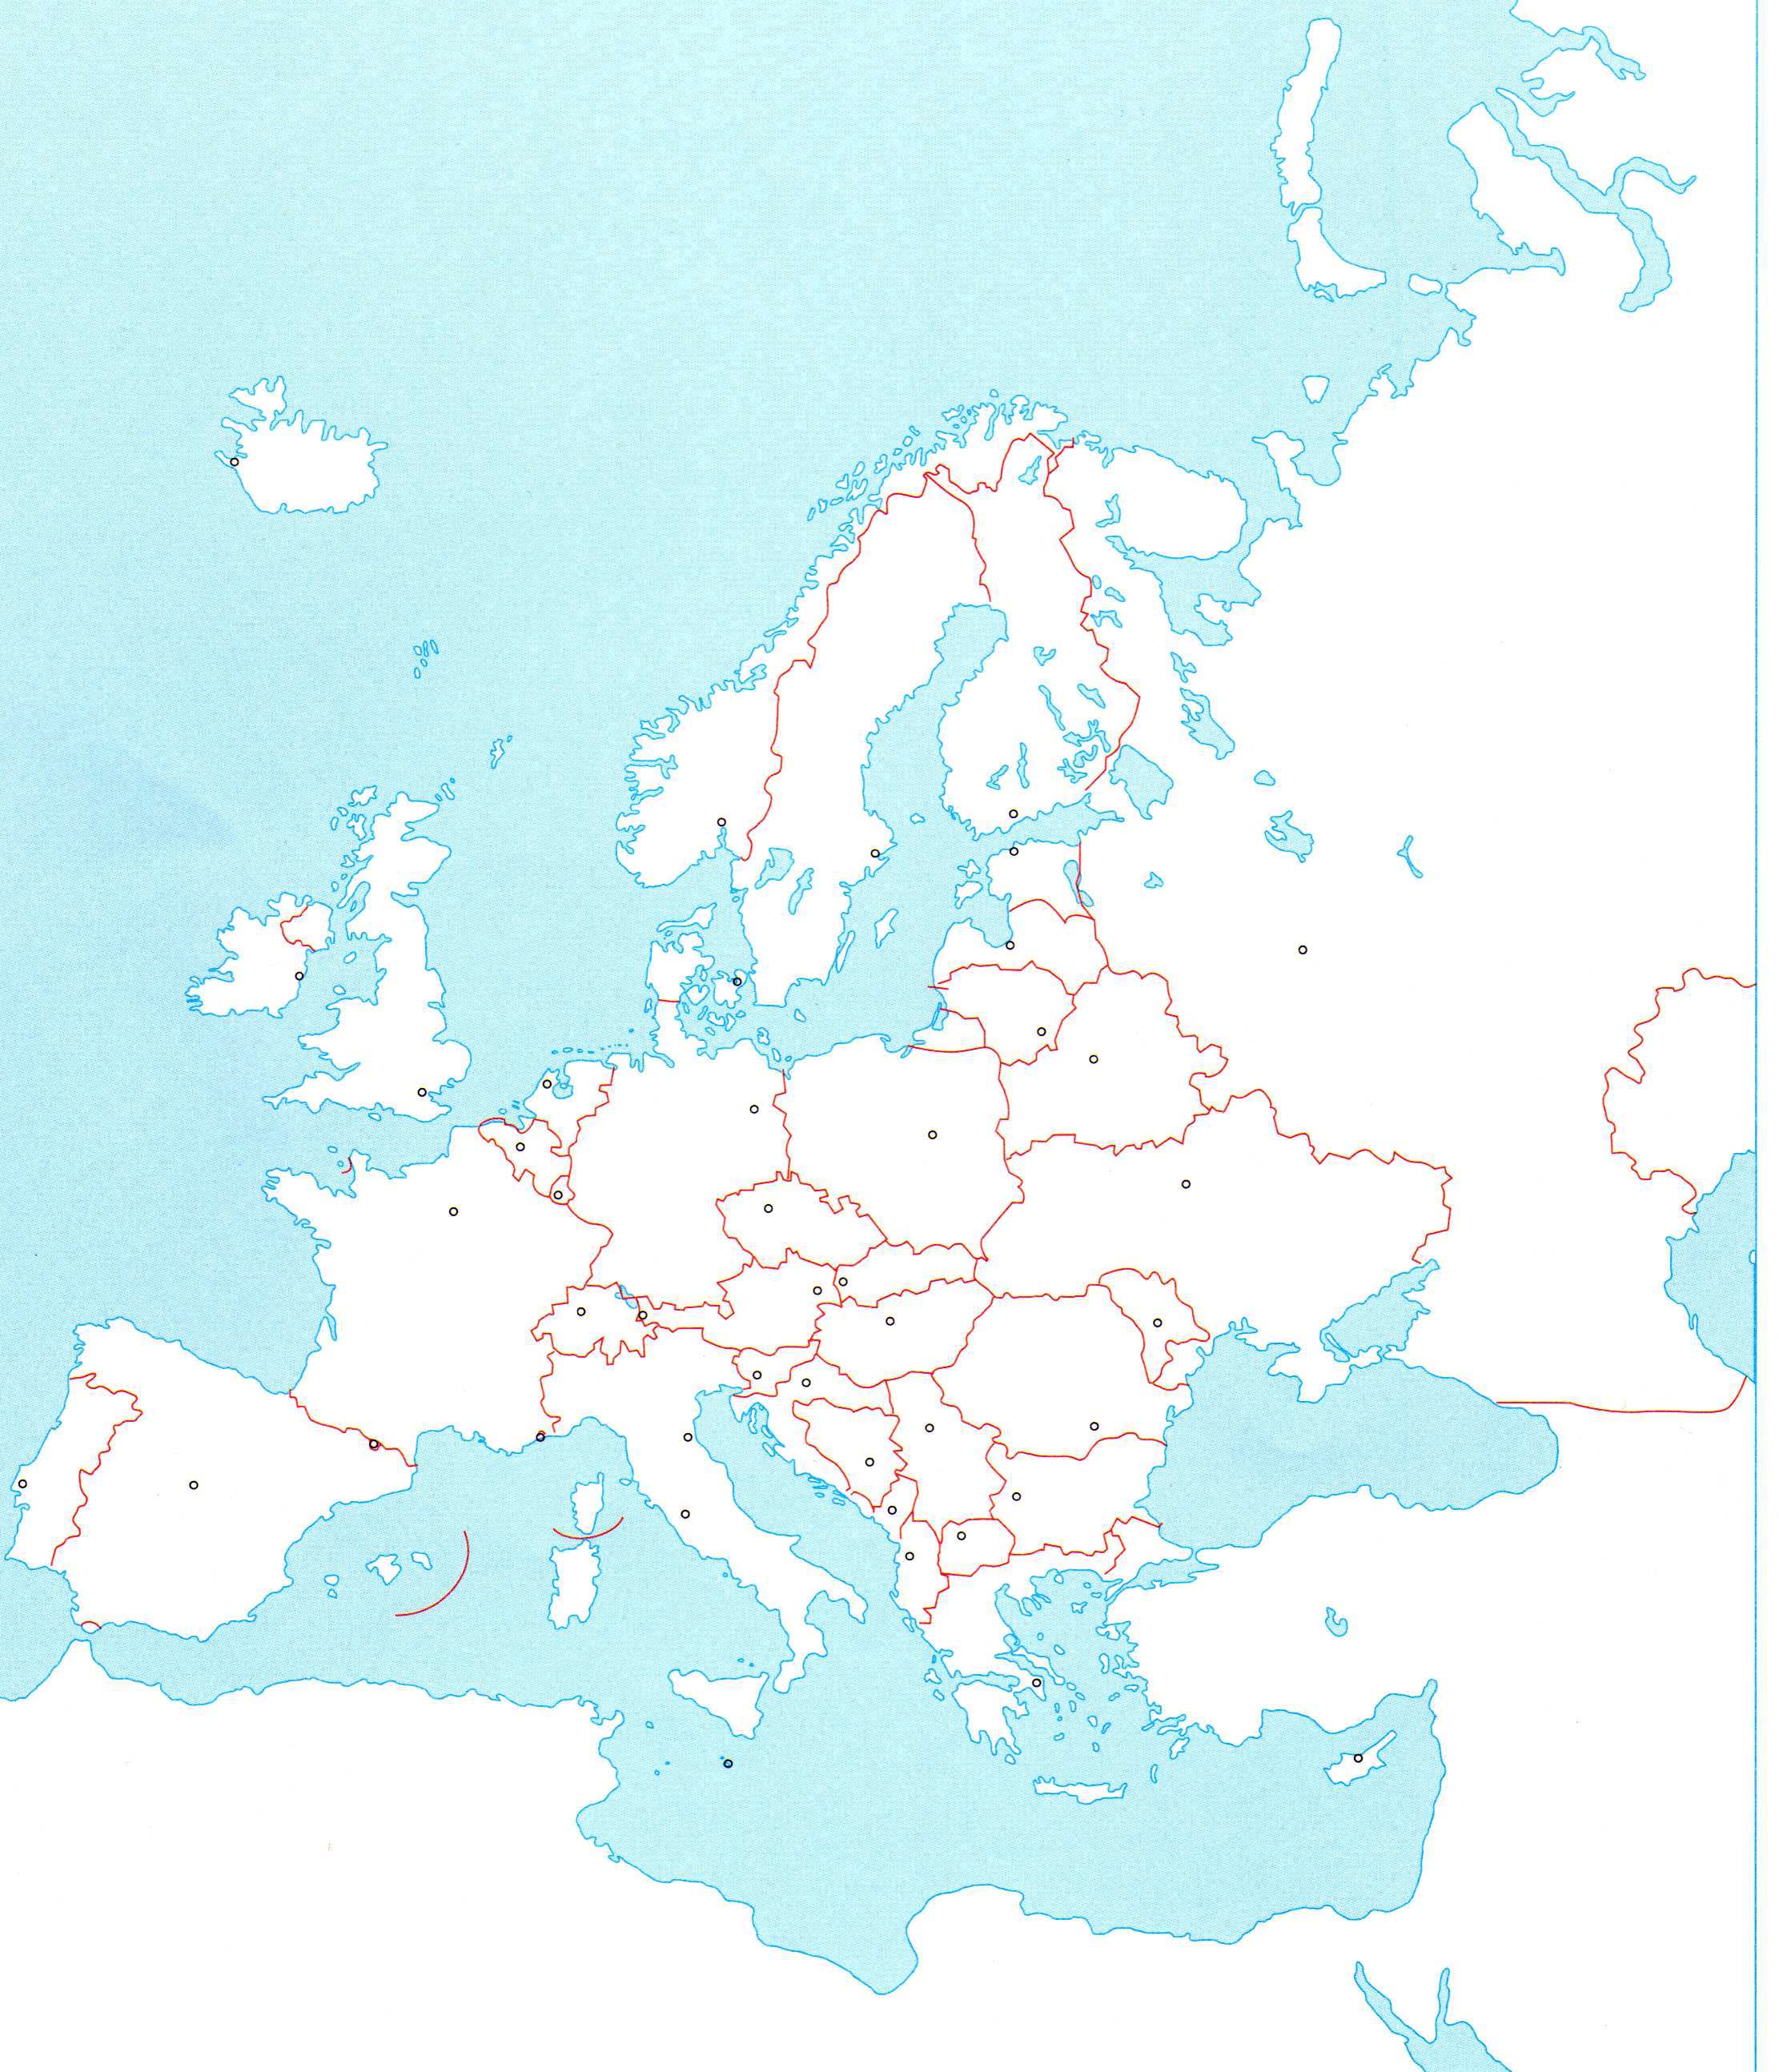 slijepa karta južne europe Osnovna škola Fažana   7.razred slijepa karta južne europe